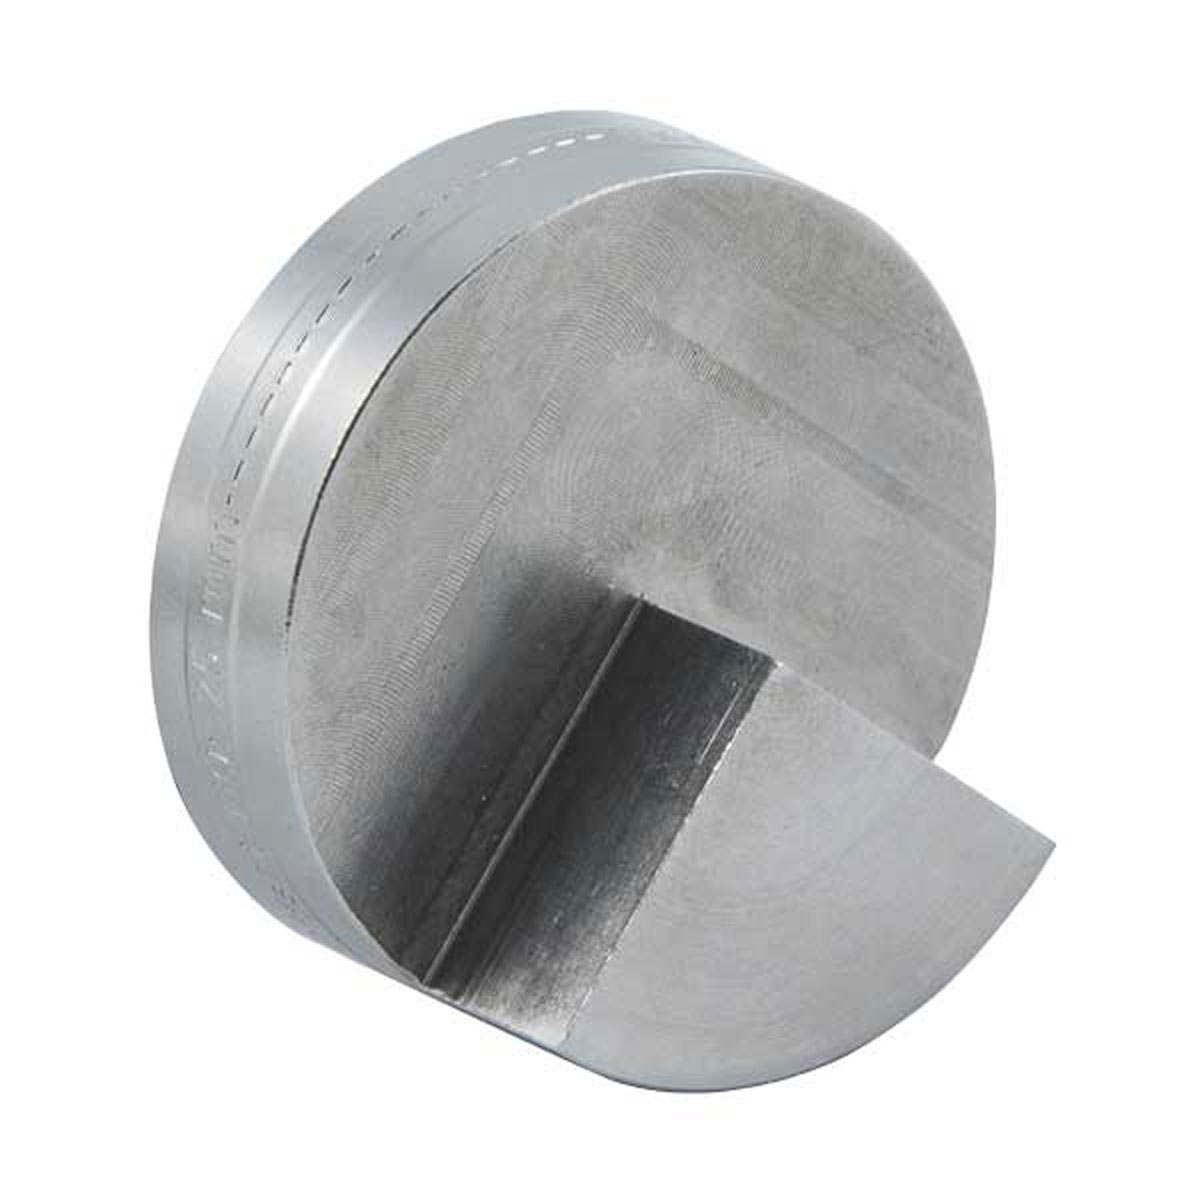 Kugel-Basis "Kontur" Ø 1,5" mit Magnet, Höhenoffset HO: 25 mm